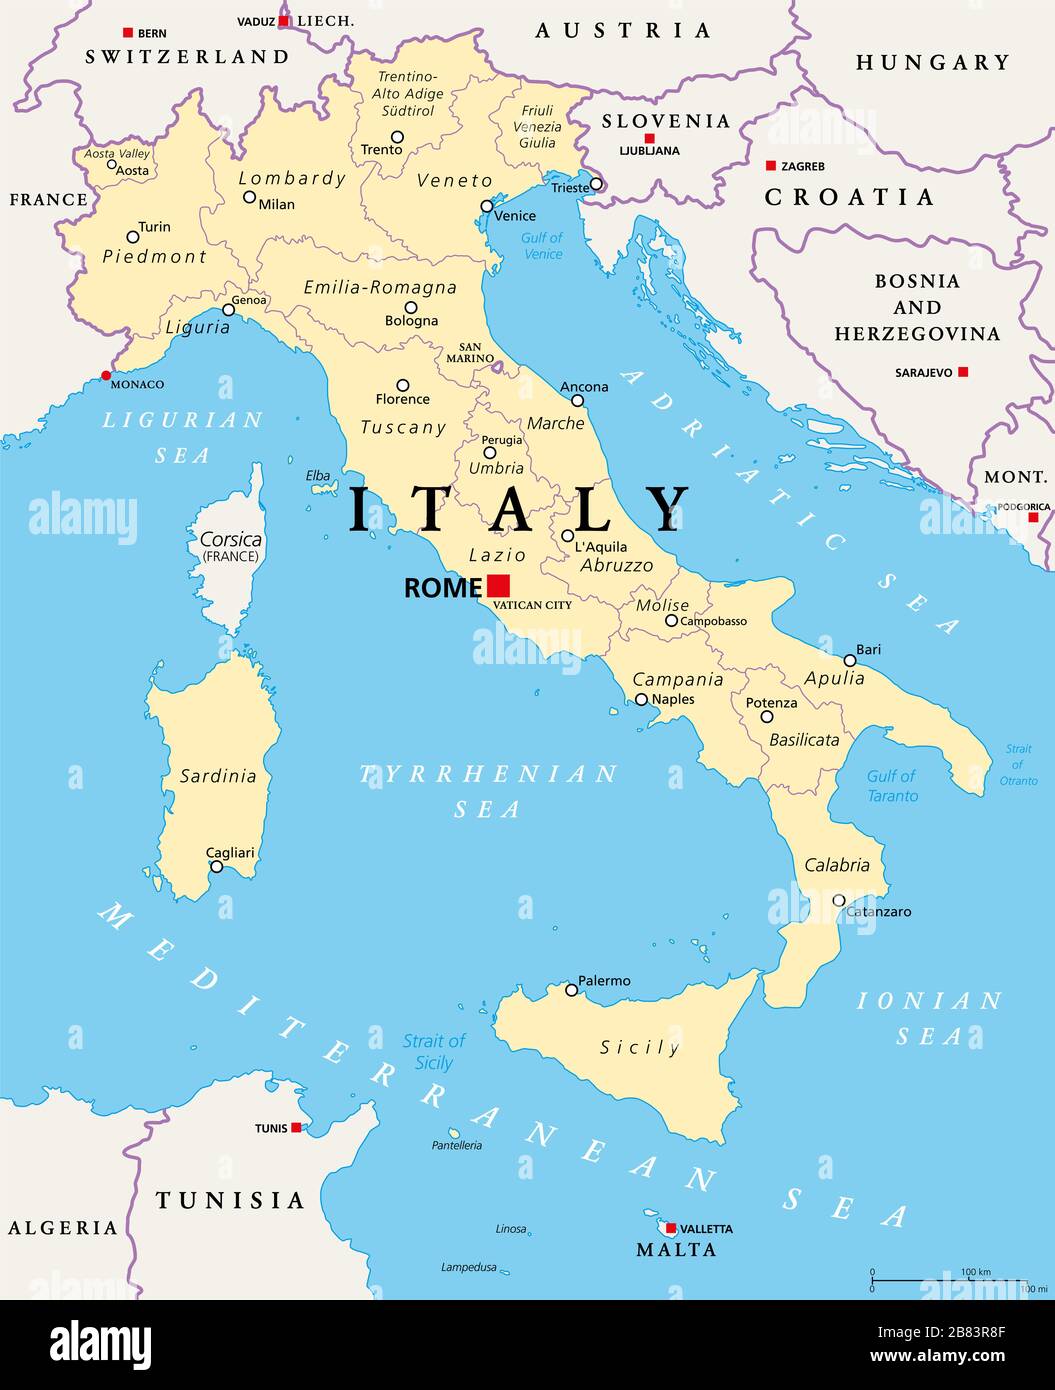 Italie, carte politique, divisions administratives. République italienne avec la capitale Rome, 20 régions et leurs capitales, frontières internationales et voisins Banque D'Images